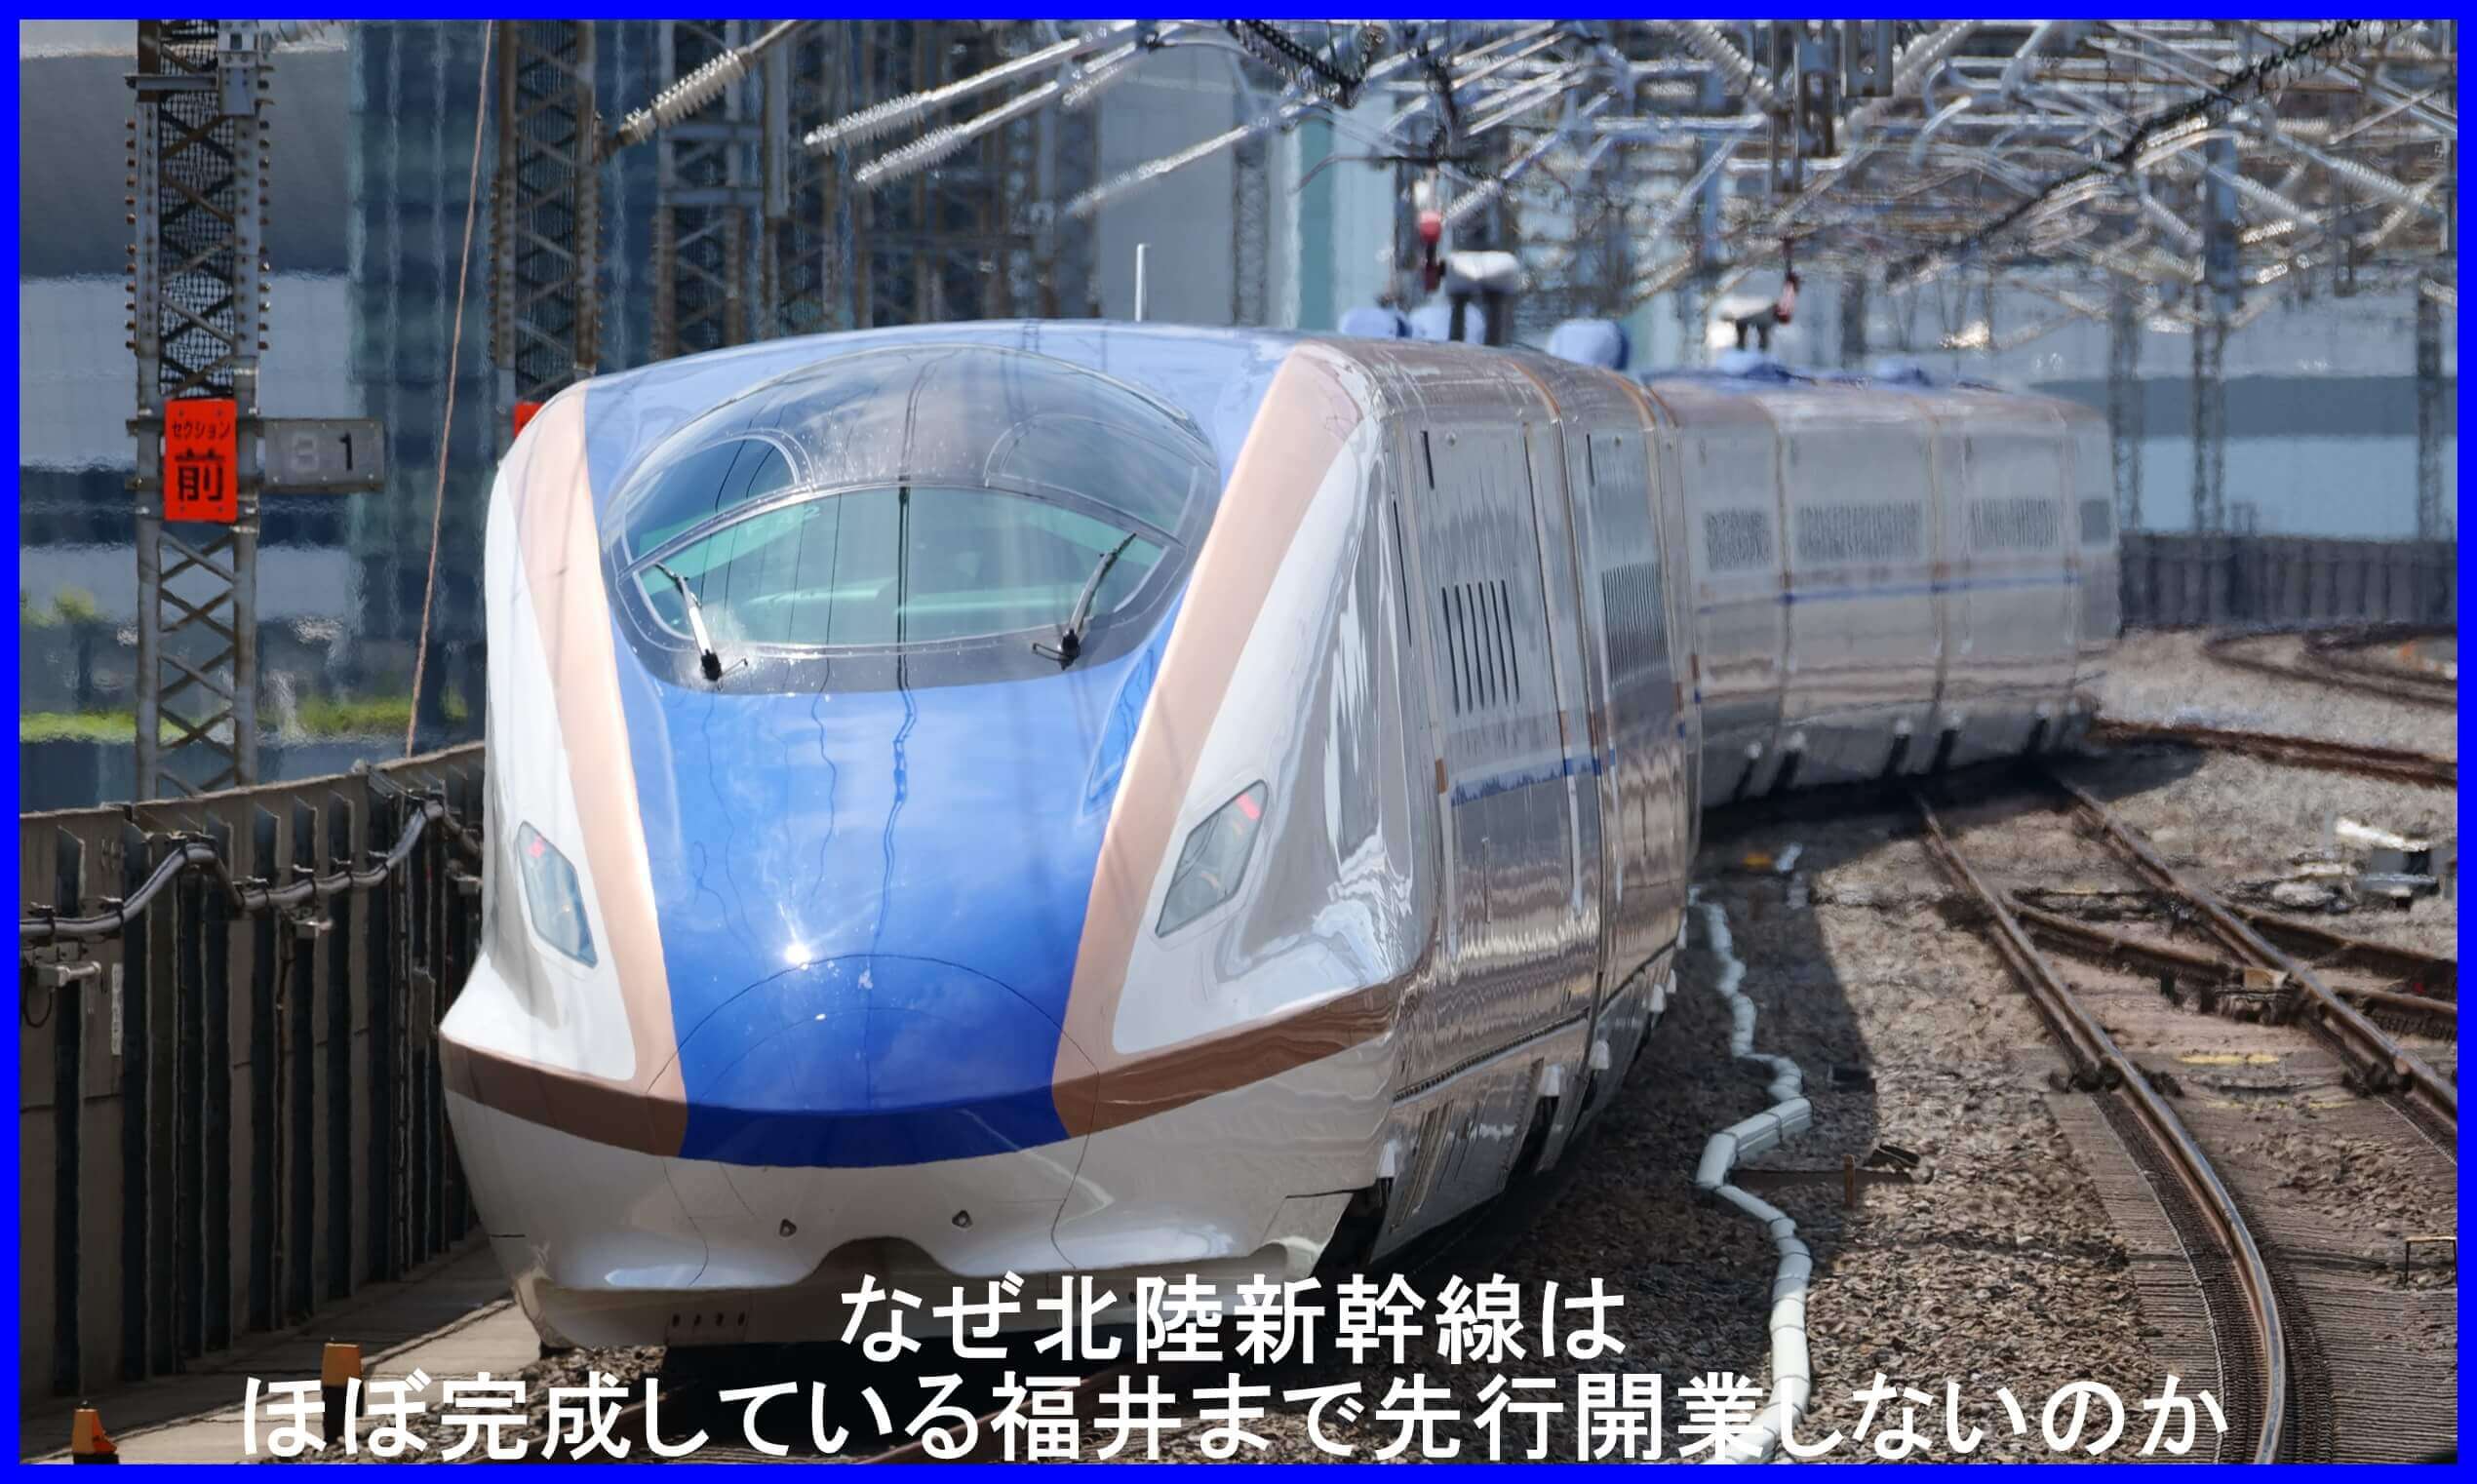 なぜ北陸新幹線はほぼ完成している福井まで先行開業しないのか